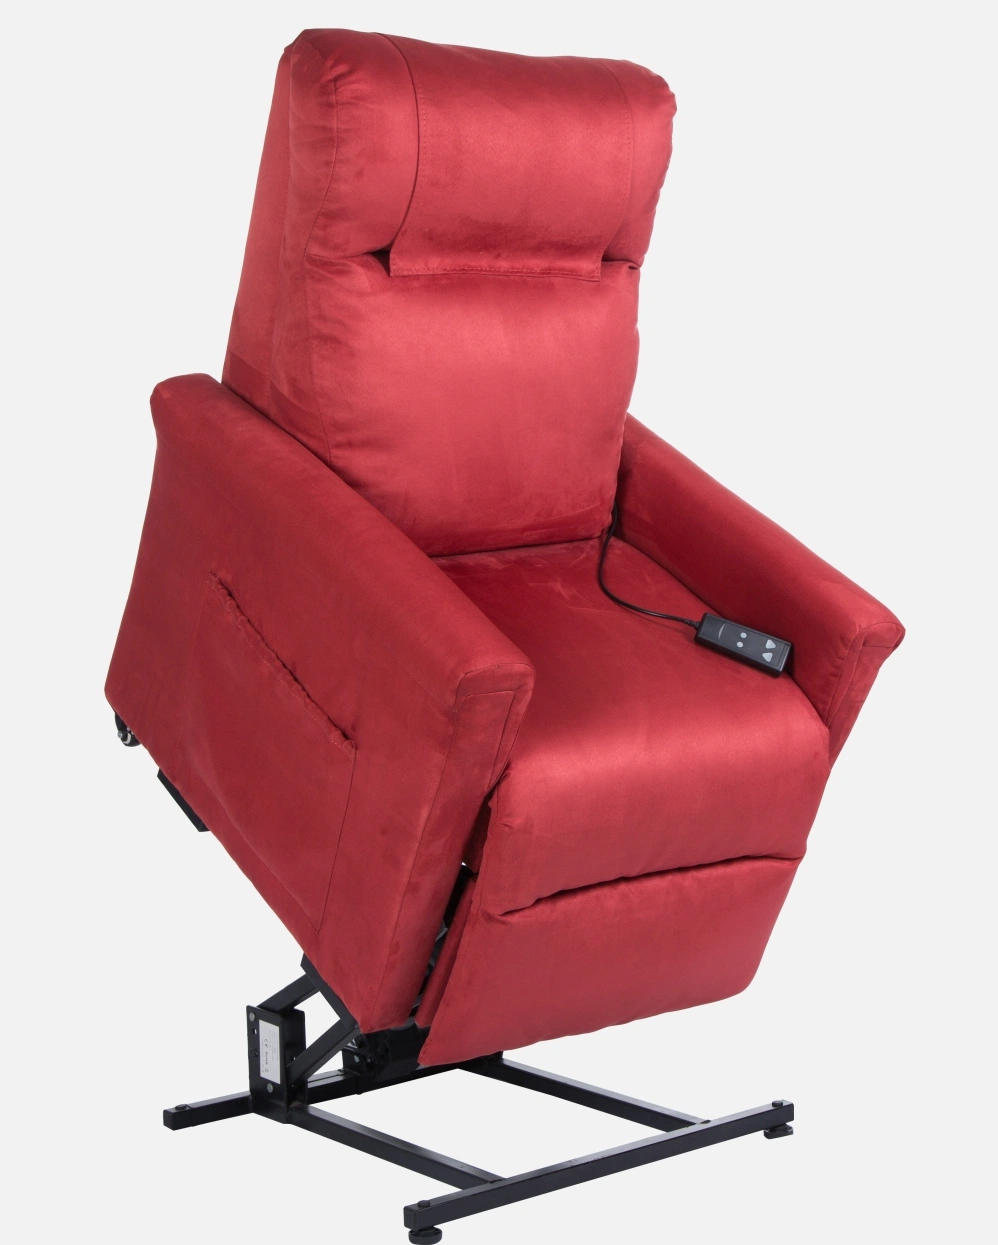 Healthcare Möbel Hersteller Einstellbares Sofa Maxicomforter Power Lift Recliner Stuhl Für ältere Menschen mit Massage